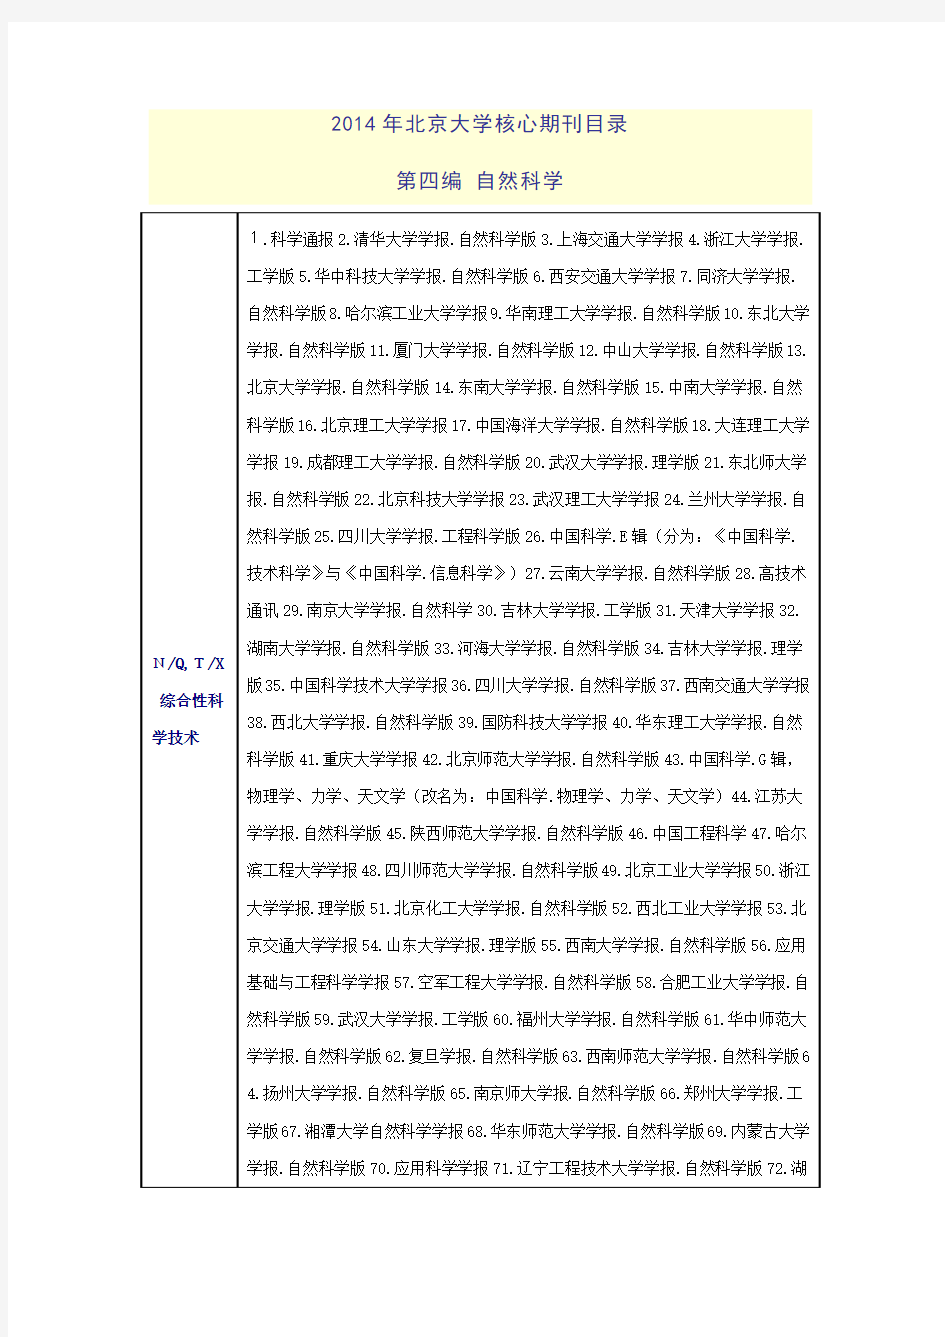 2014年北大版《中文核心期刊要目总览》至2015年